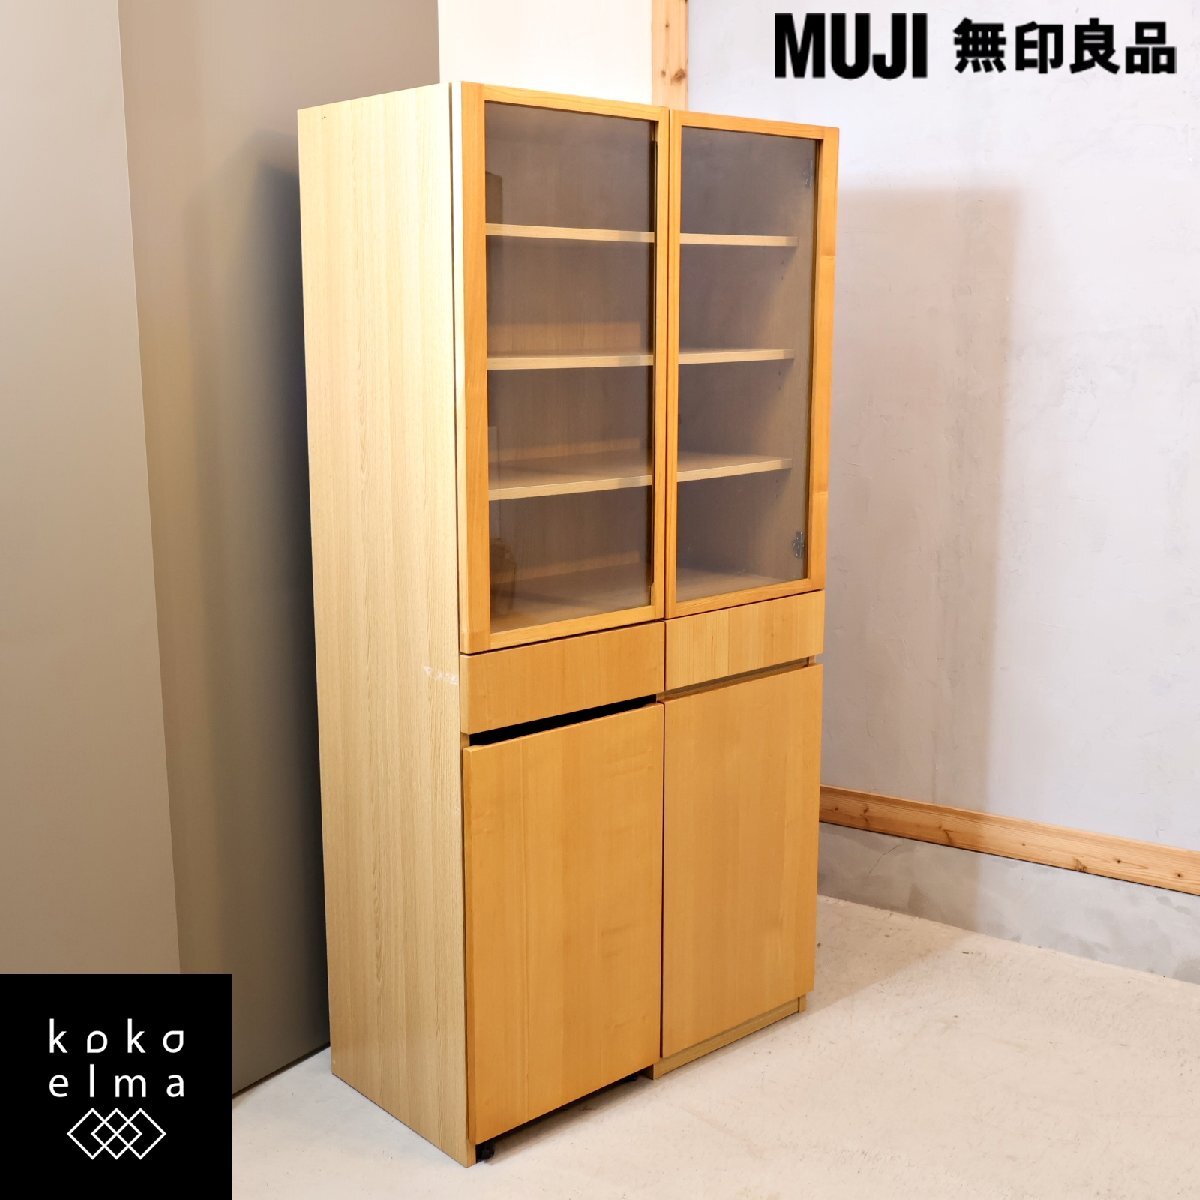 MUJI Muji Ryohin японский ясень шкаф буфет Wagon имеется натуральный современный простой кухня панель casual Северная Европа стиль ED142